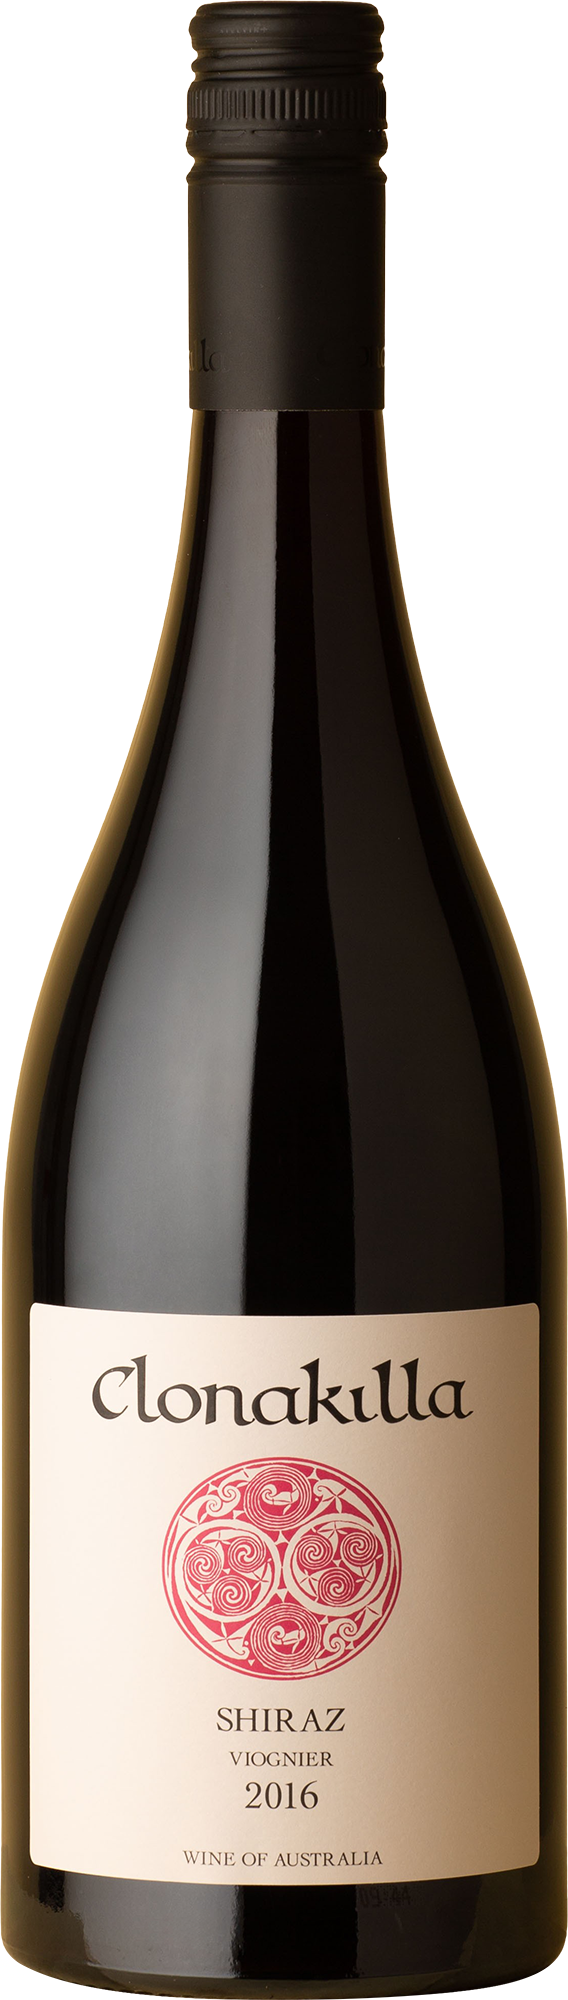 Clonakilla - Shiraz Viognier 2016 Red Wine